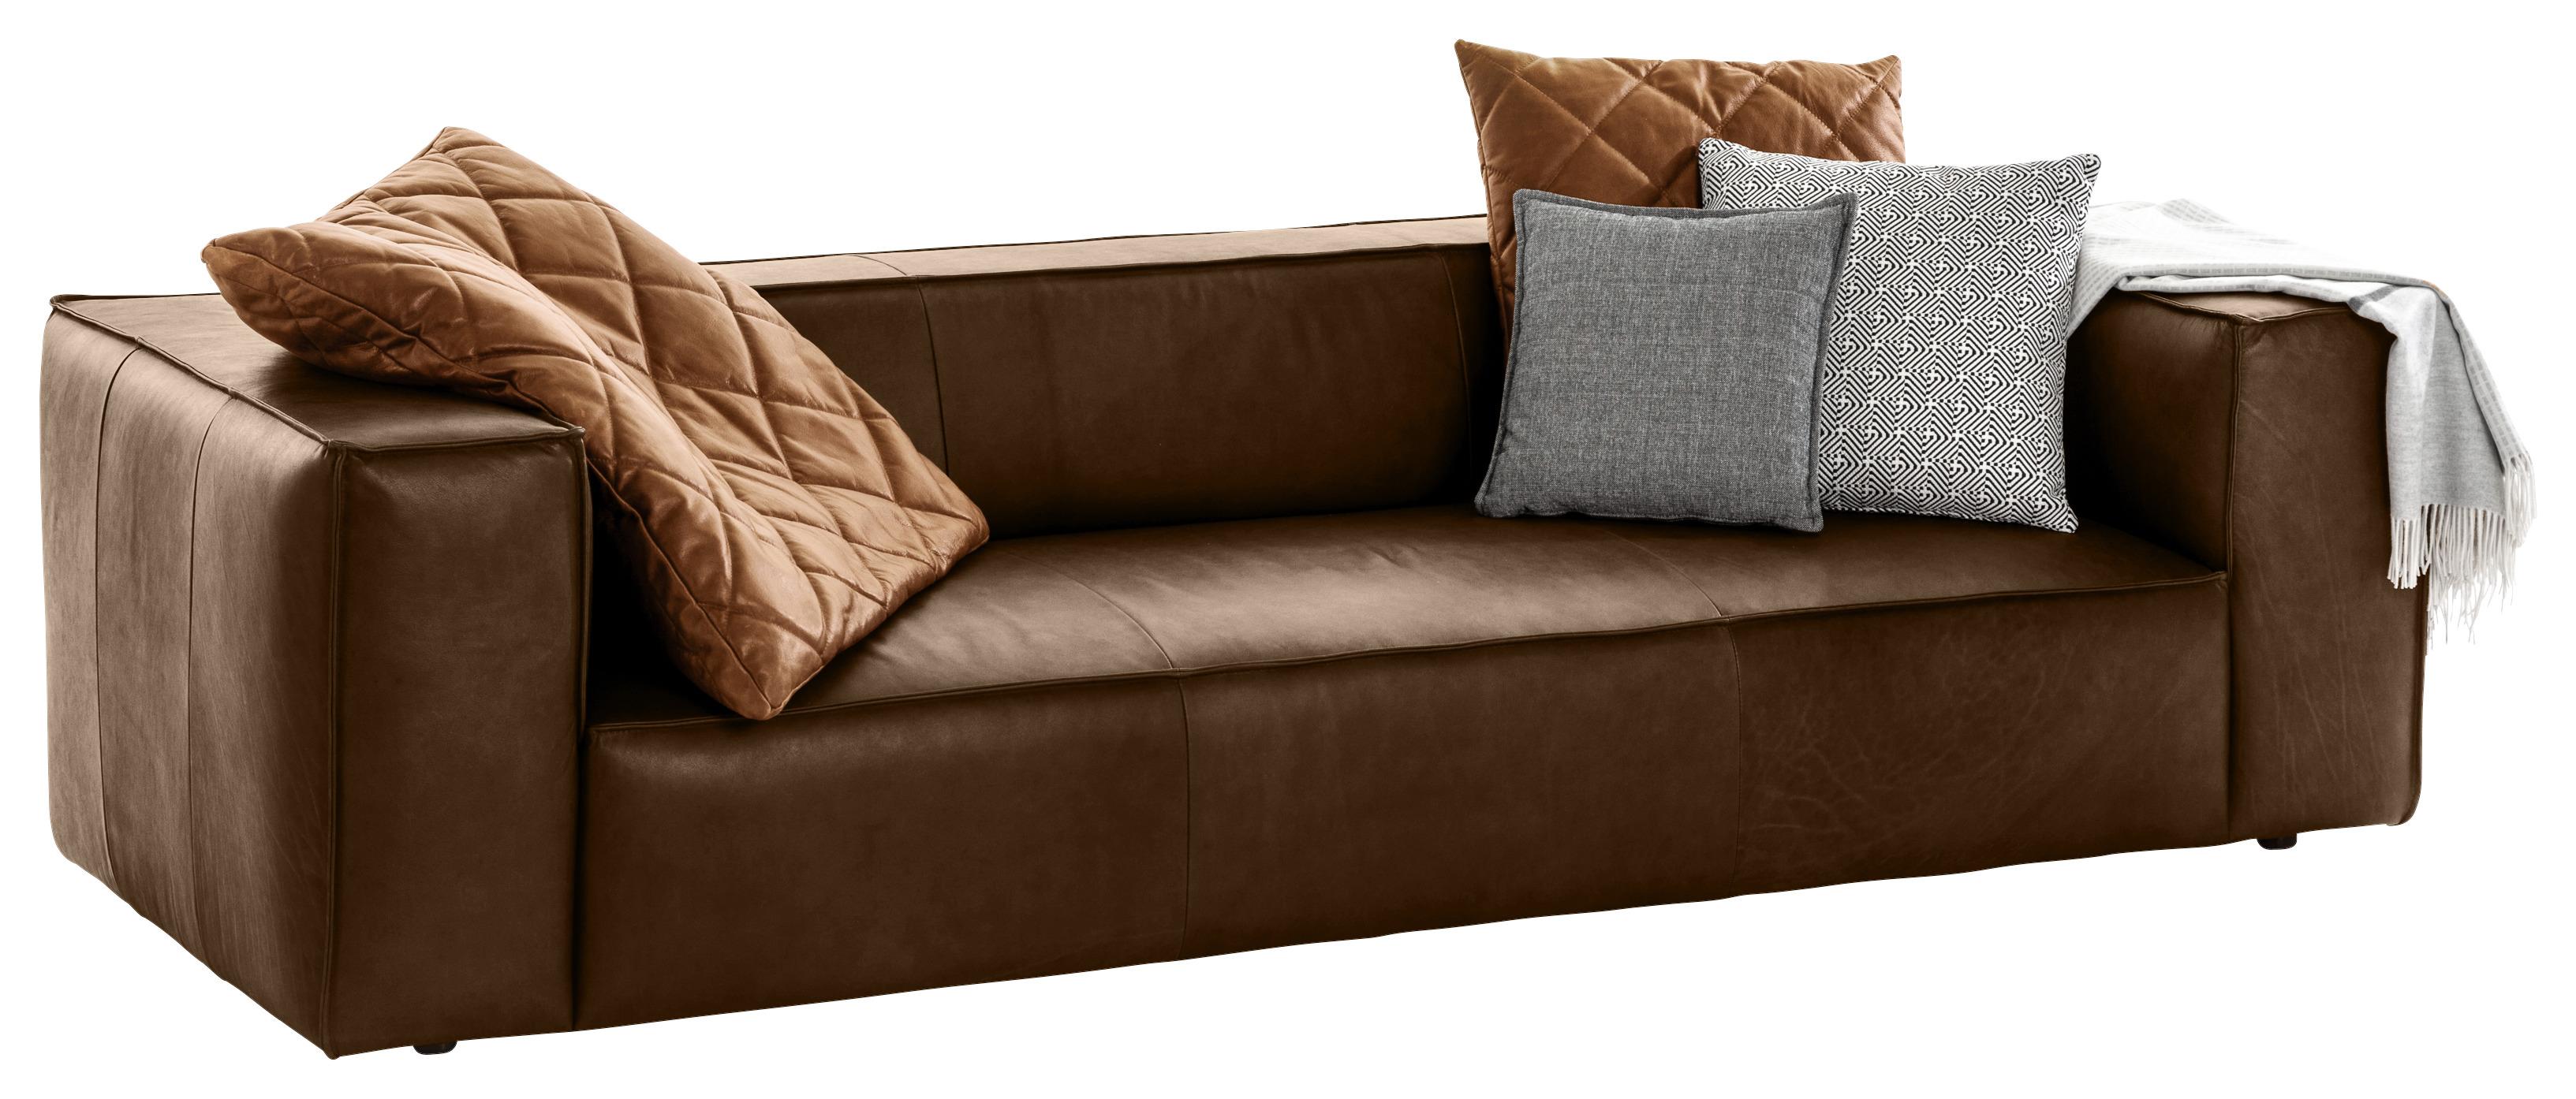 Dreisitzer-Sofa Around The Block Dbraunb:260cm - Dunkelbraun/Schwarz, MODERN, Leder (260/66/104cm) - W.Schillig